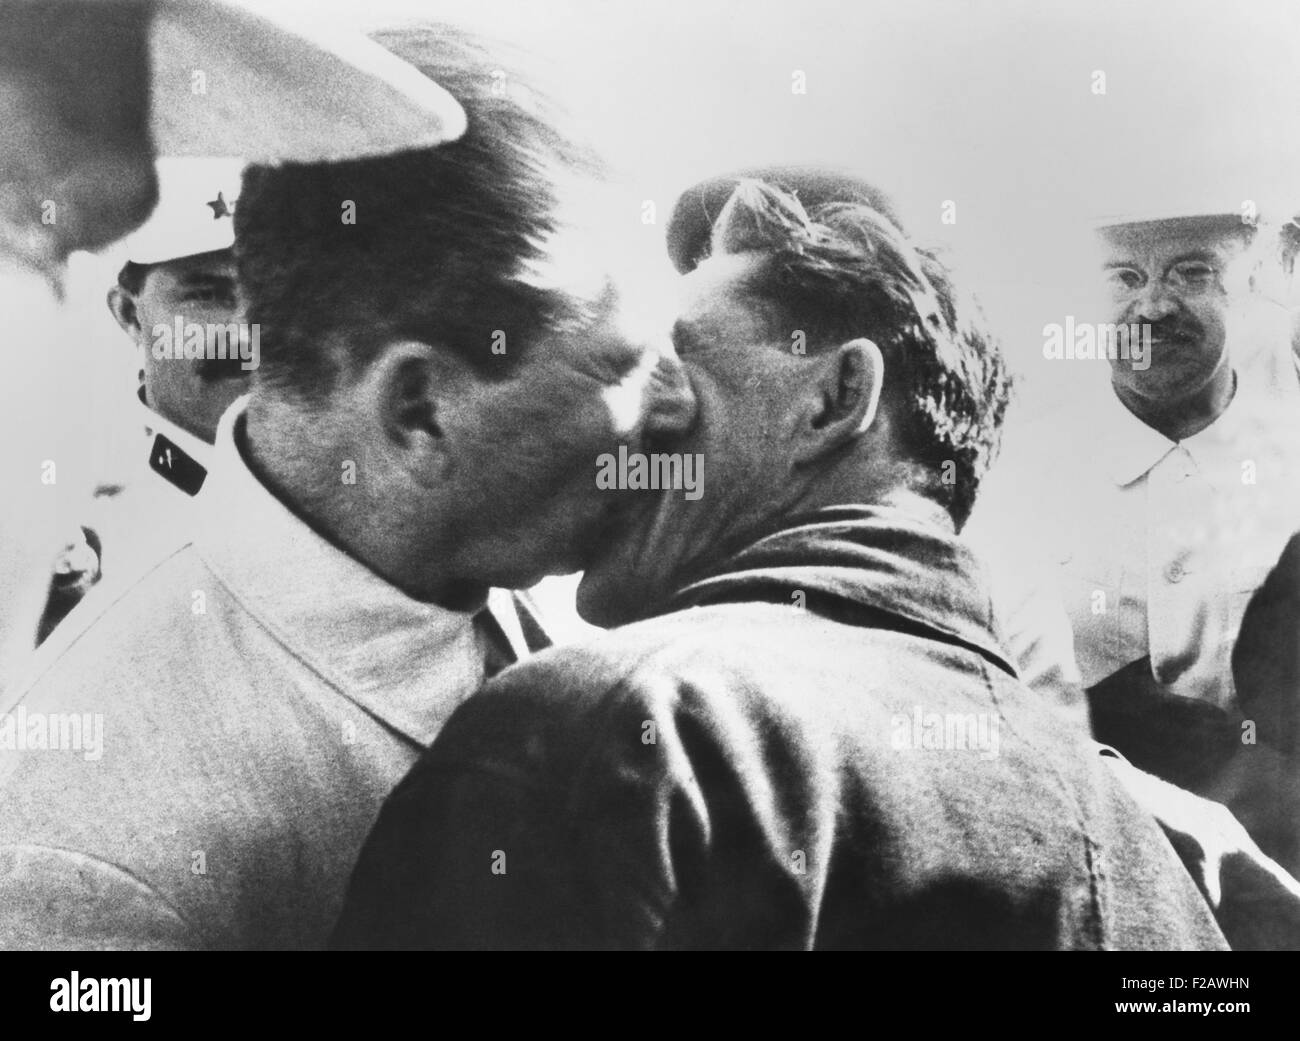 Josef Stalin (links), umarmen und küssen Ivan T. Spirin, Chief Navigator 1937 Polar-Expedition. Sowjetische Wissenschaftler festgestellt des weltweit erste Nordpol-Eis-station, Nordpol-1, 13 Meilen vom Nordpol. (CSU 2015 11 1369) Stockfoto